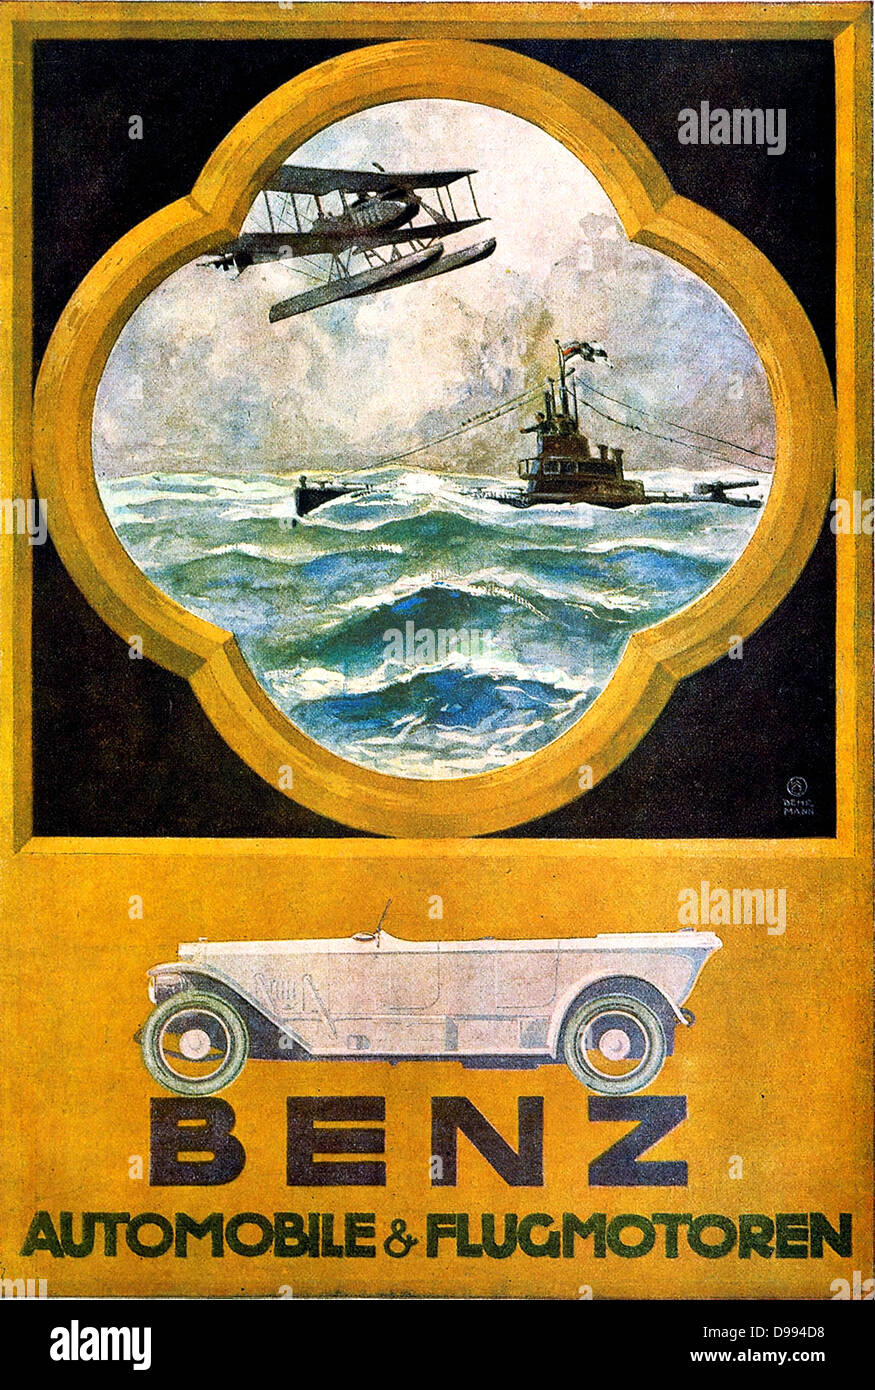 Otto Albert Koch (1866-1920), artista gráfico alemán. Anuncio de automóviles Mercedes Benz: tierra, agua, aire: además de Benz Automóviles, este cartel de 1918 es publicidad aero y motores marinos. Foto de stock